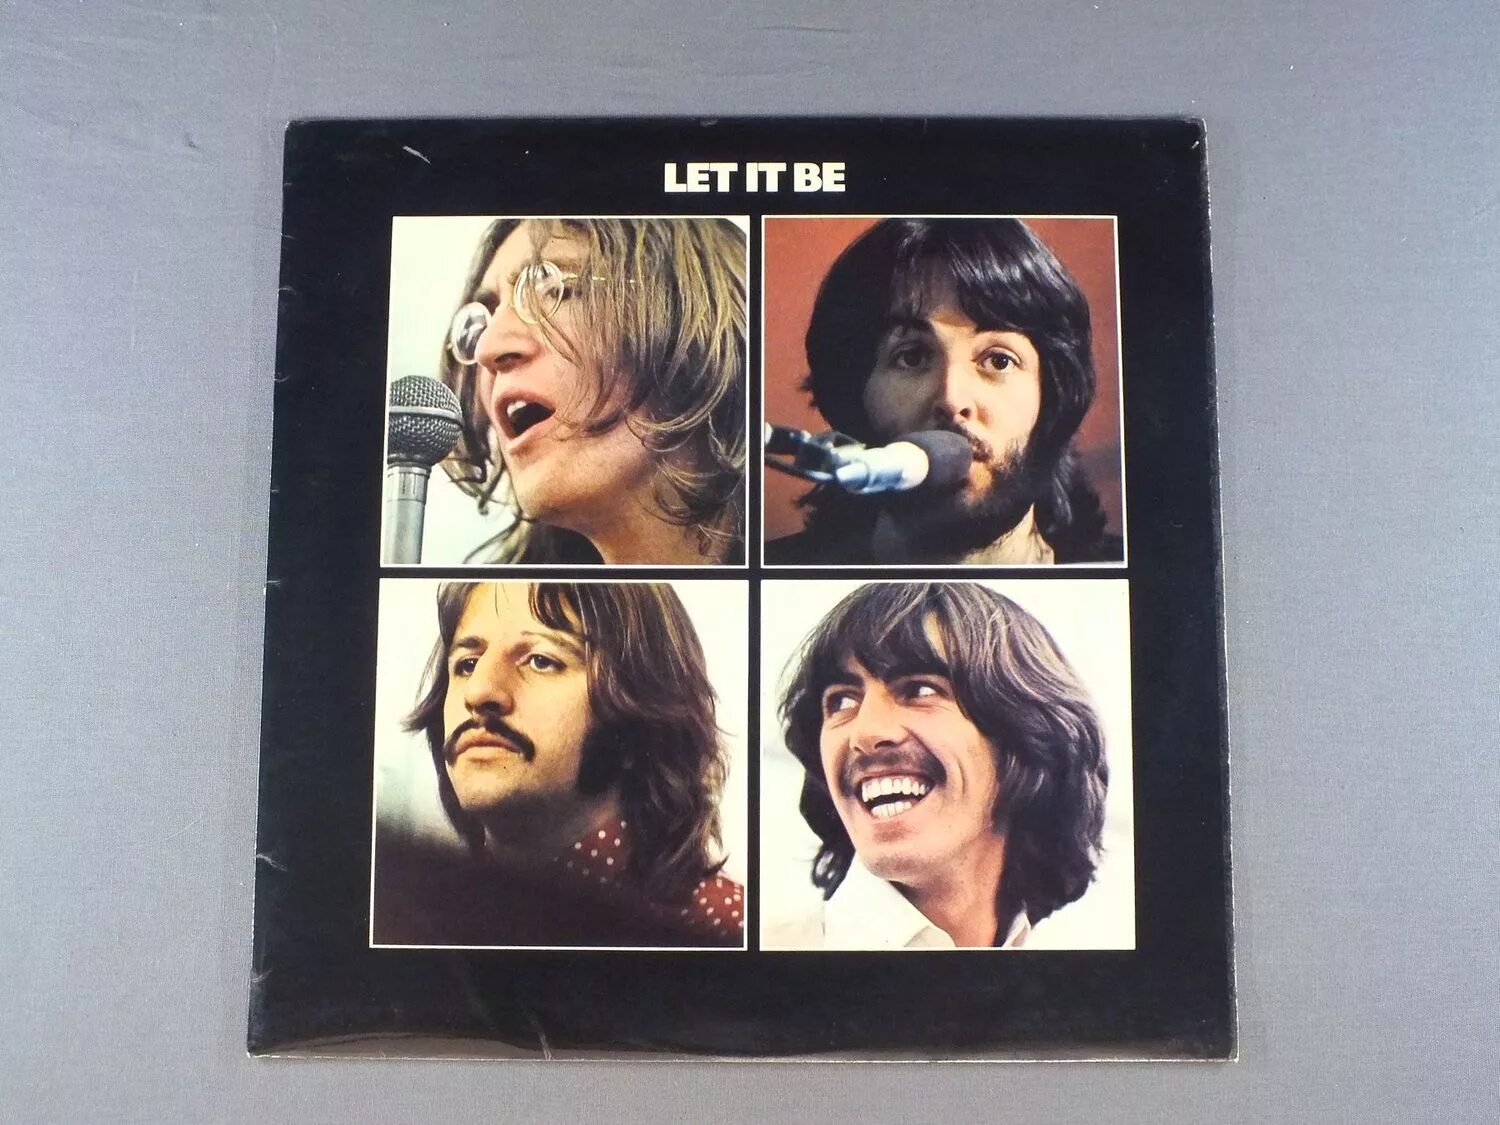 Битлз 1970 Let it be. Обложка альбома Битлз Let it be. The Beatles Let it be 1970 обложка. Битлз 1970 Let it be в студии. Лет ит би слушать